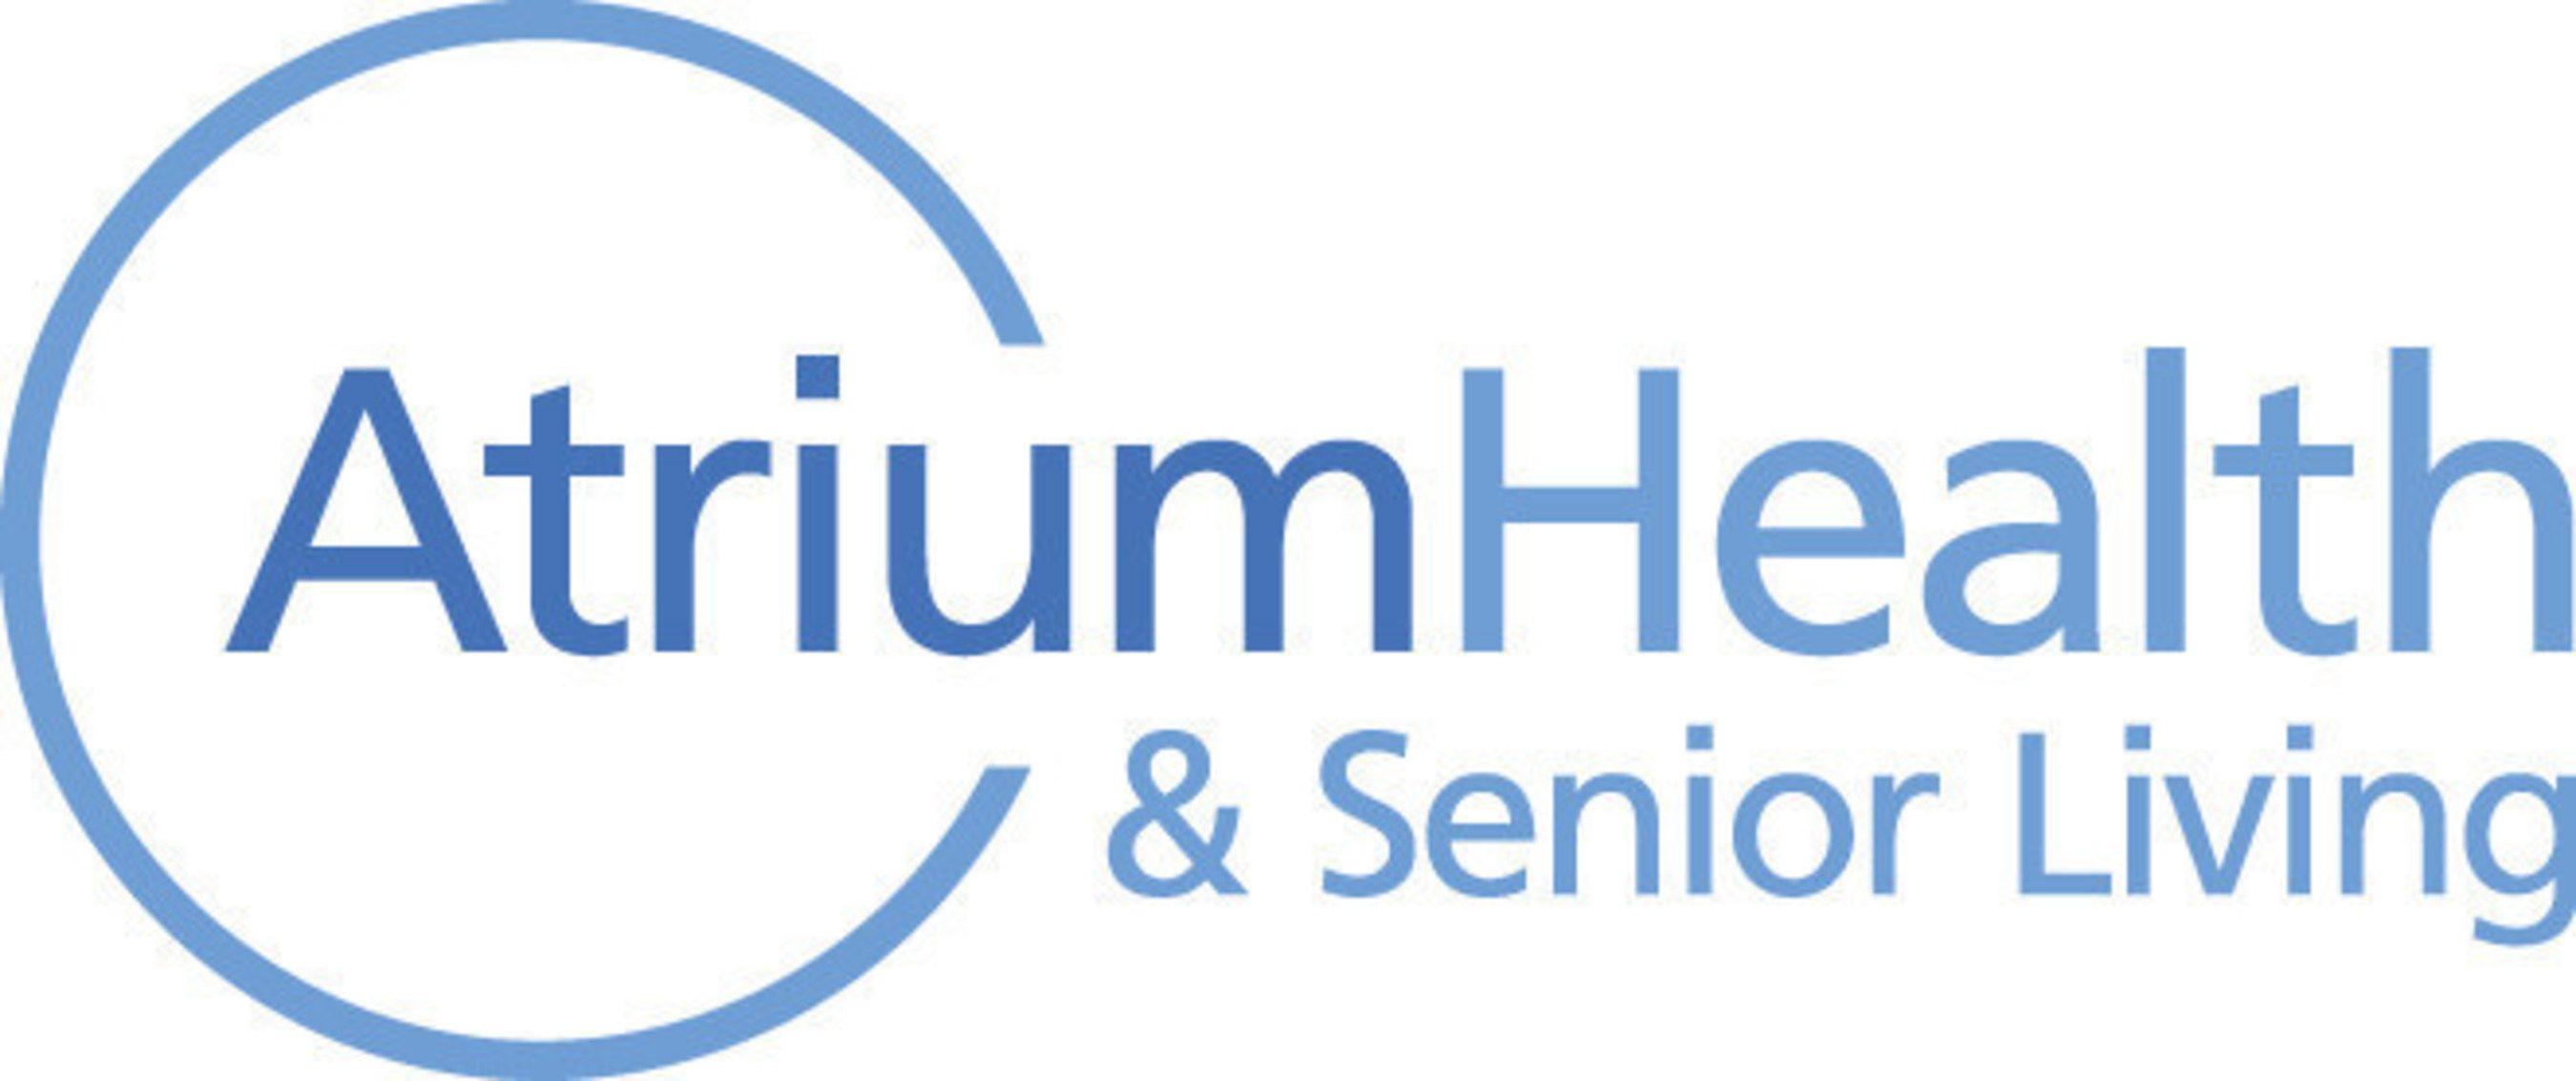 Seniorcarecenters Logo - Atrium Health & Senior Living Announces A New Post Acute Care Center ...